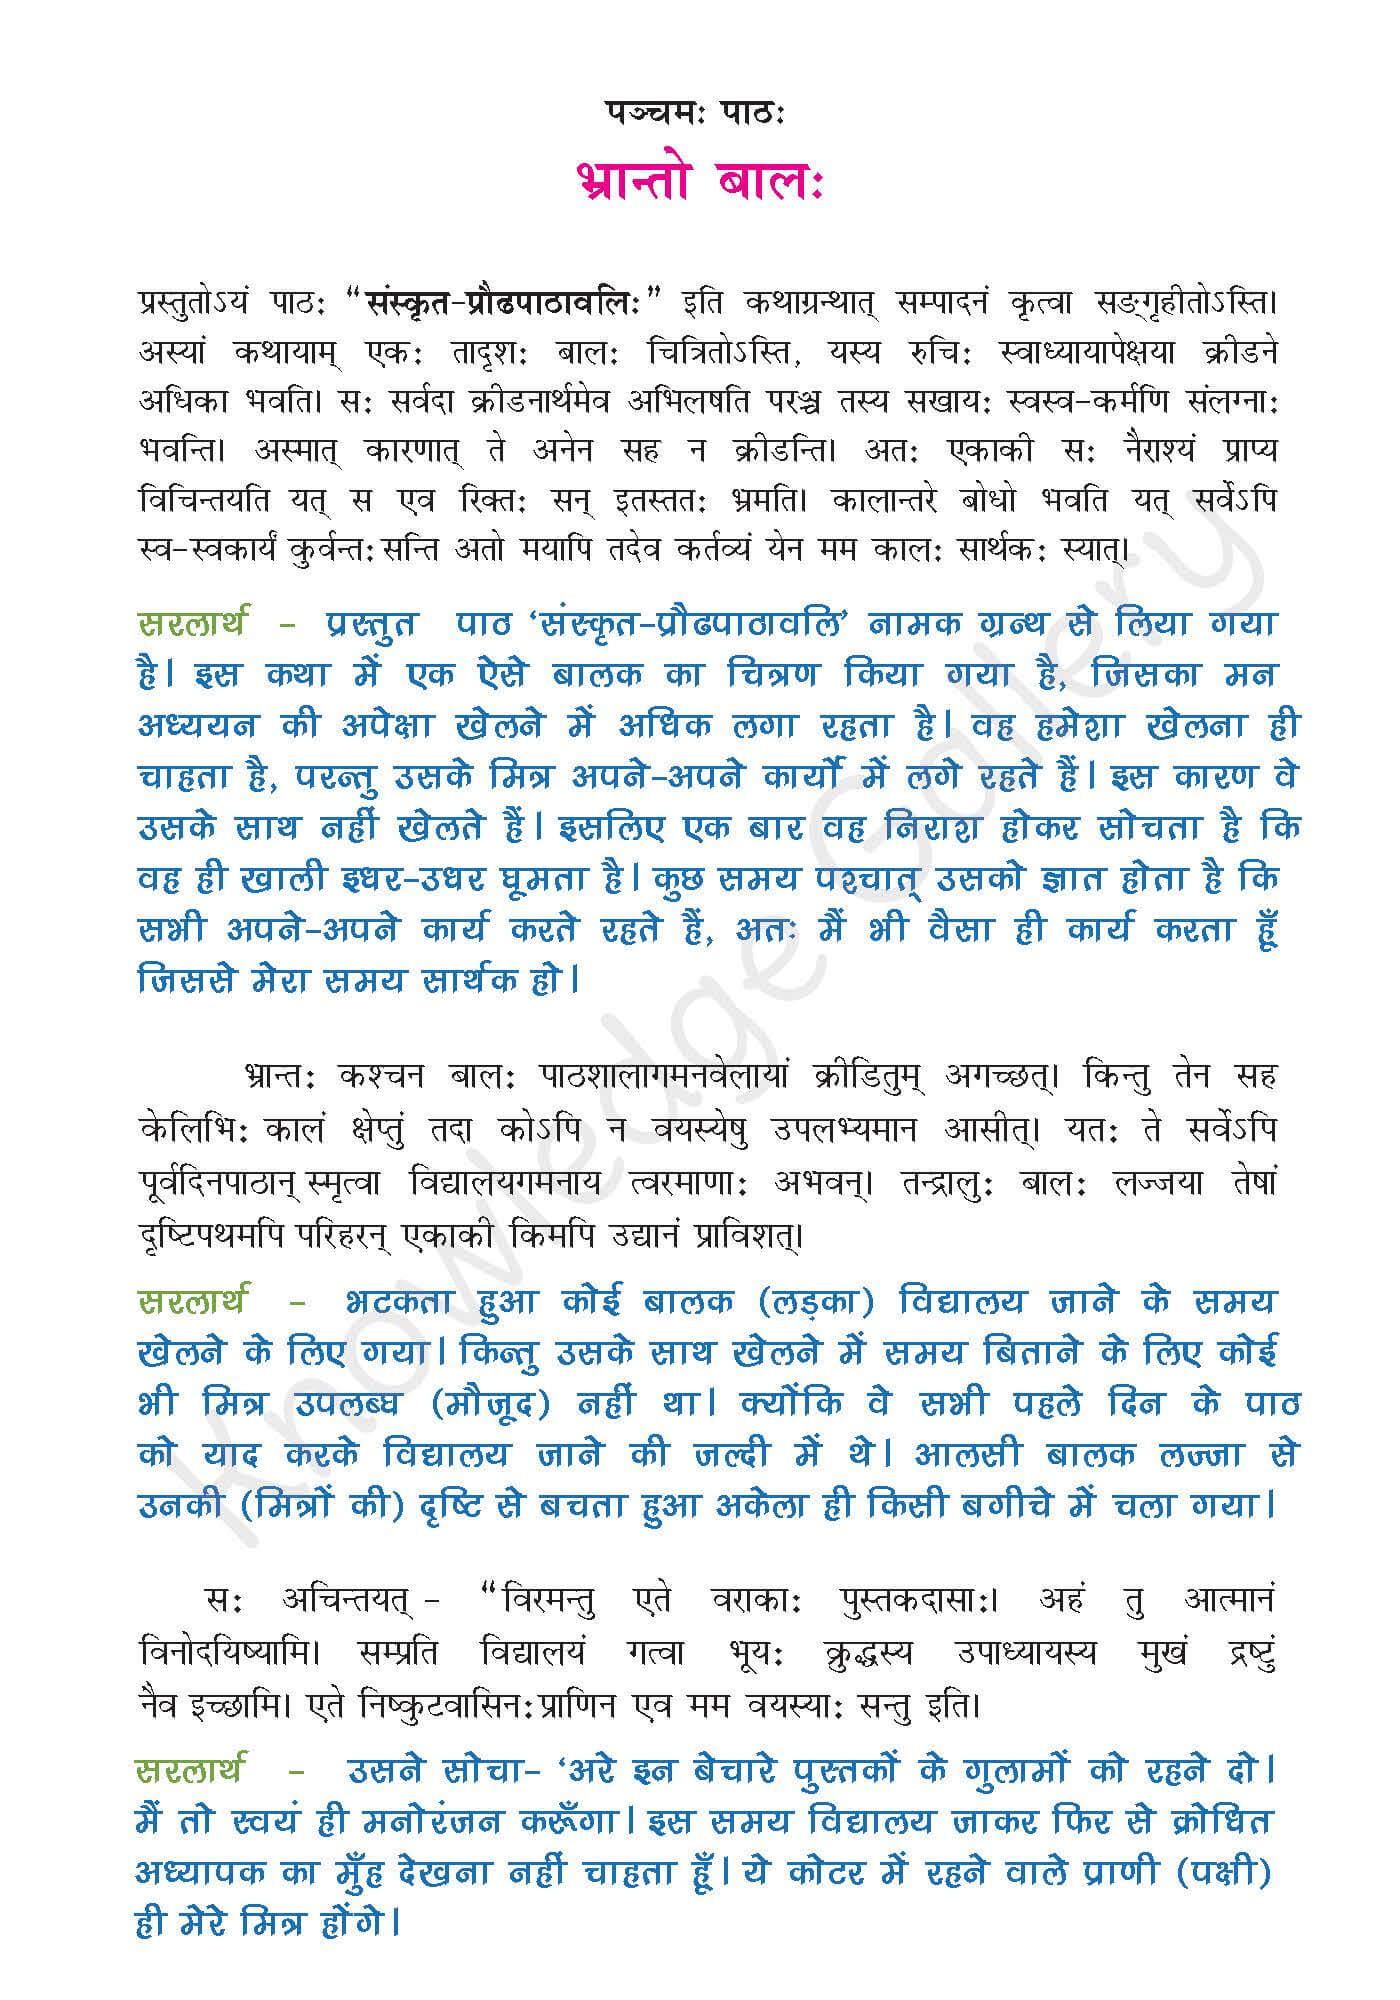 NCERT Solution For Class 9 Sanskrit Chapter 5 part 1